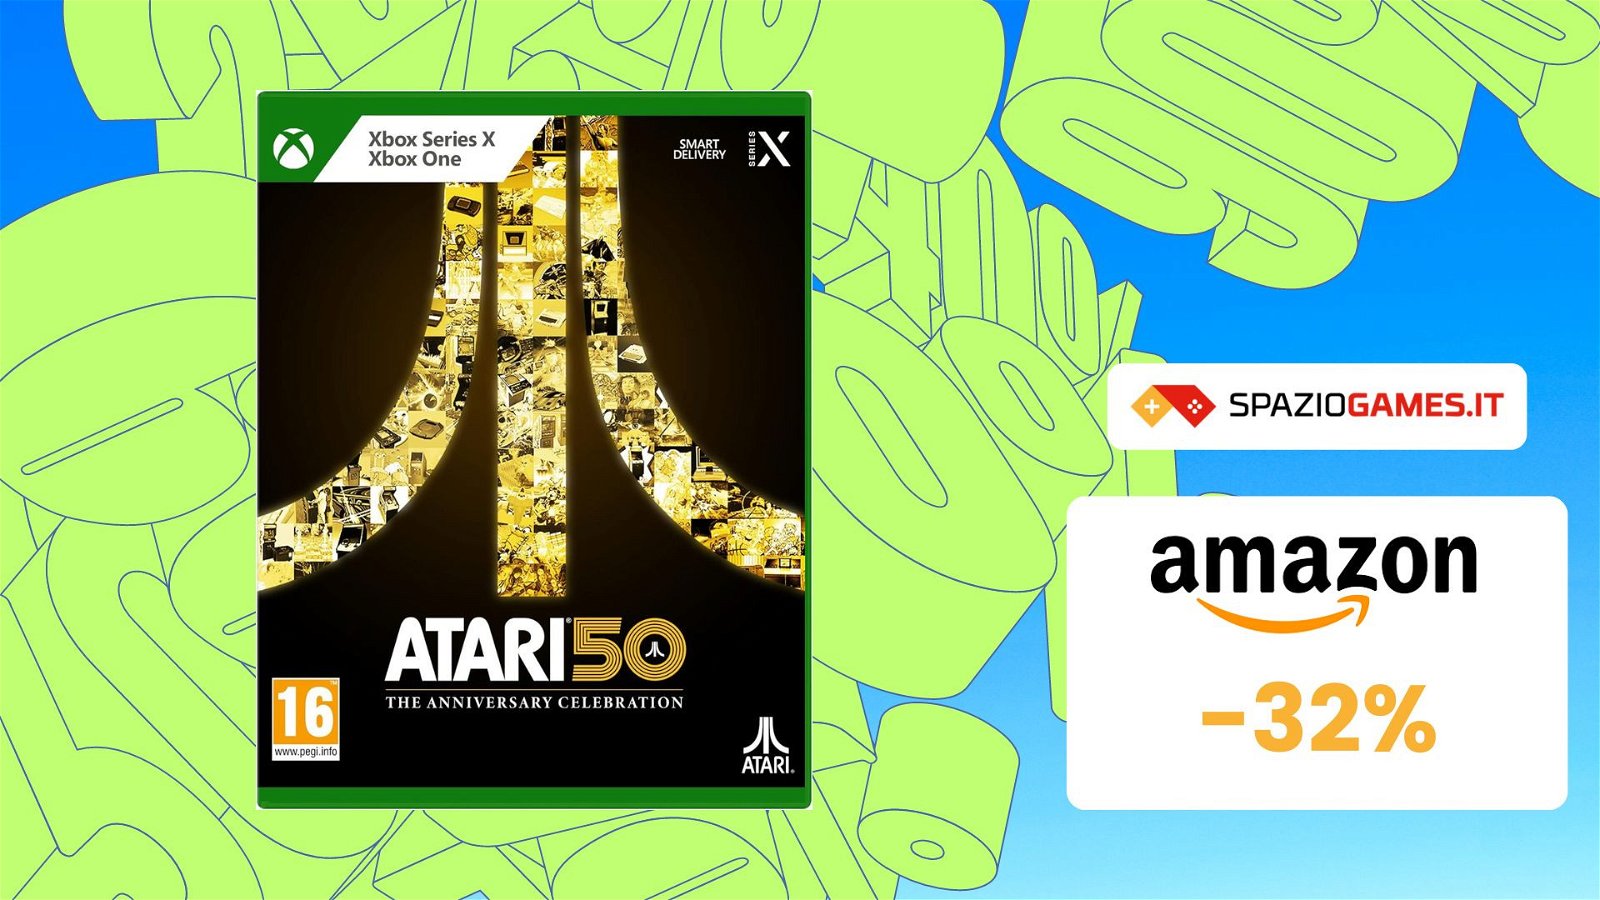 Atari 50, CHE PREZZO! Su Amazon risparmi il 32%